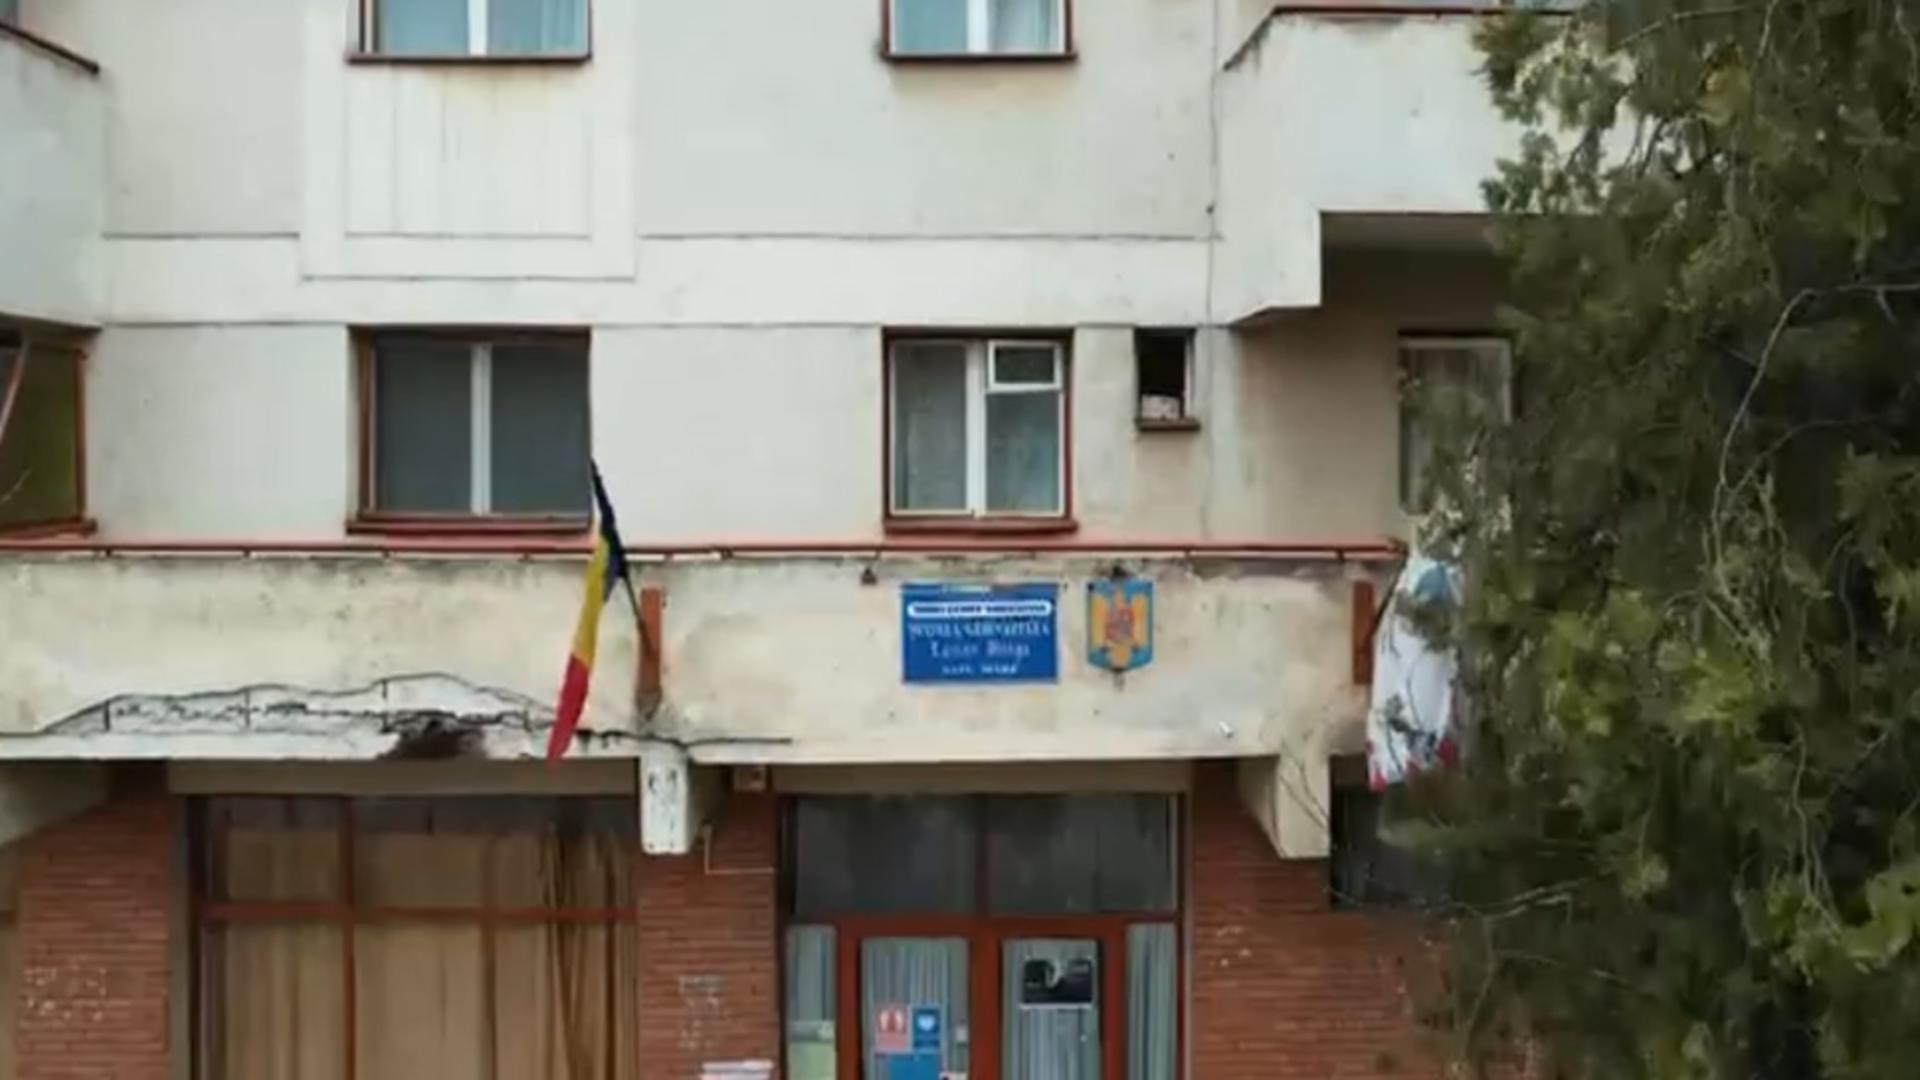 Școală din România, improvizată într-un bloc de locuințe. Pentru a merge la baie, elevii coboară de la etajul 4 la parter – VIDEO